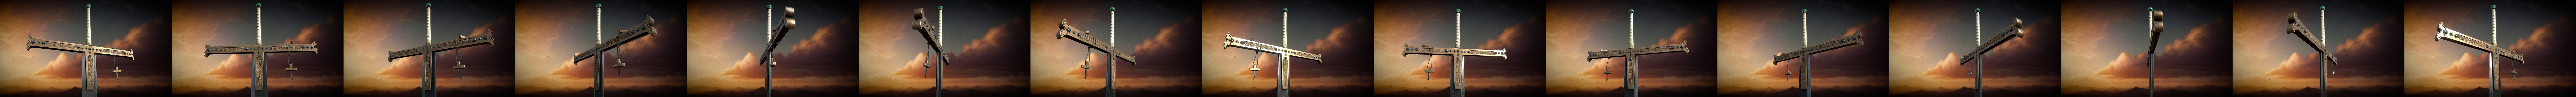 Yoru - Mihawk's sword - 3D model by Baddier (@baddier.1310